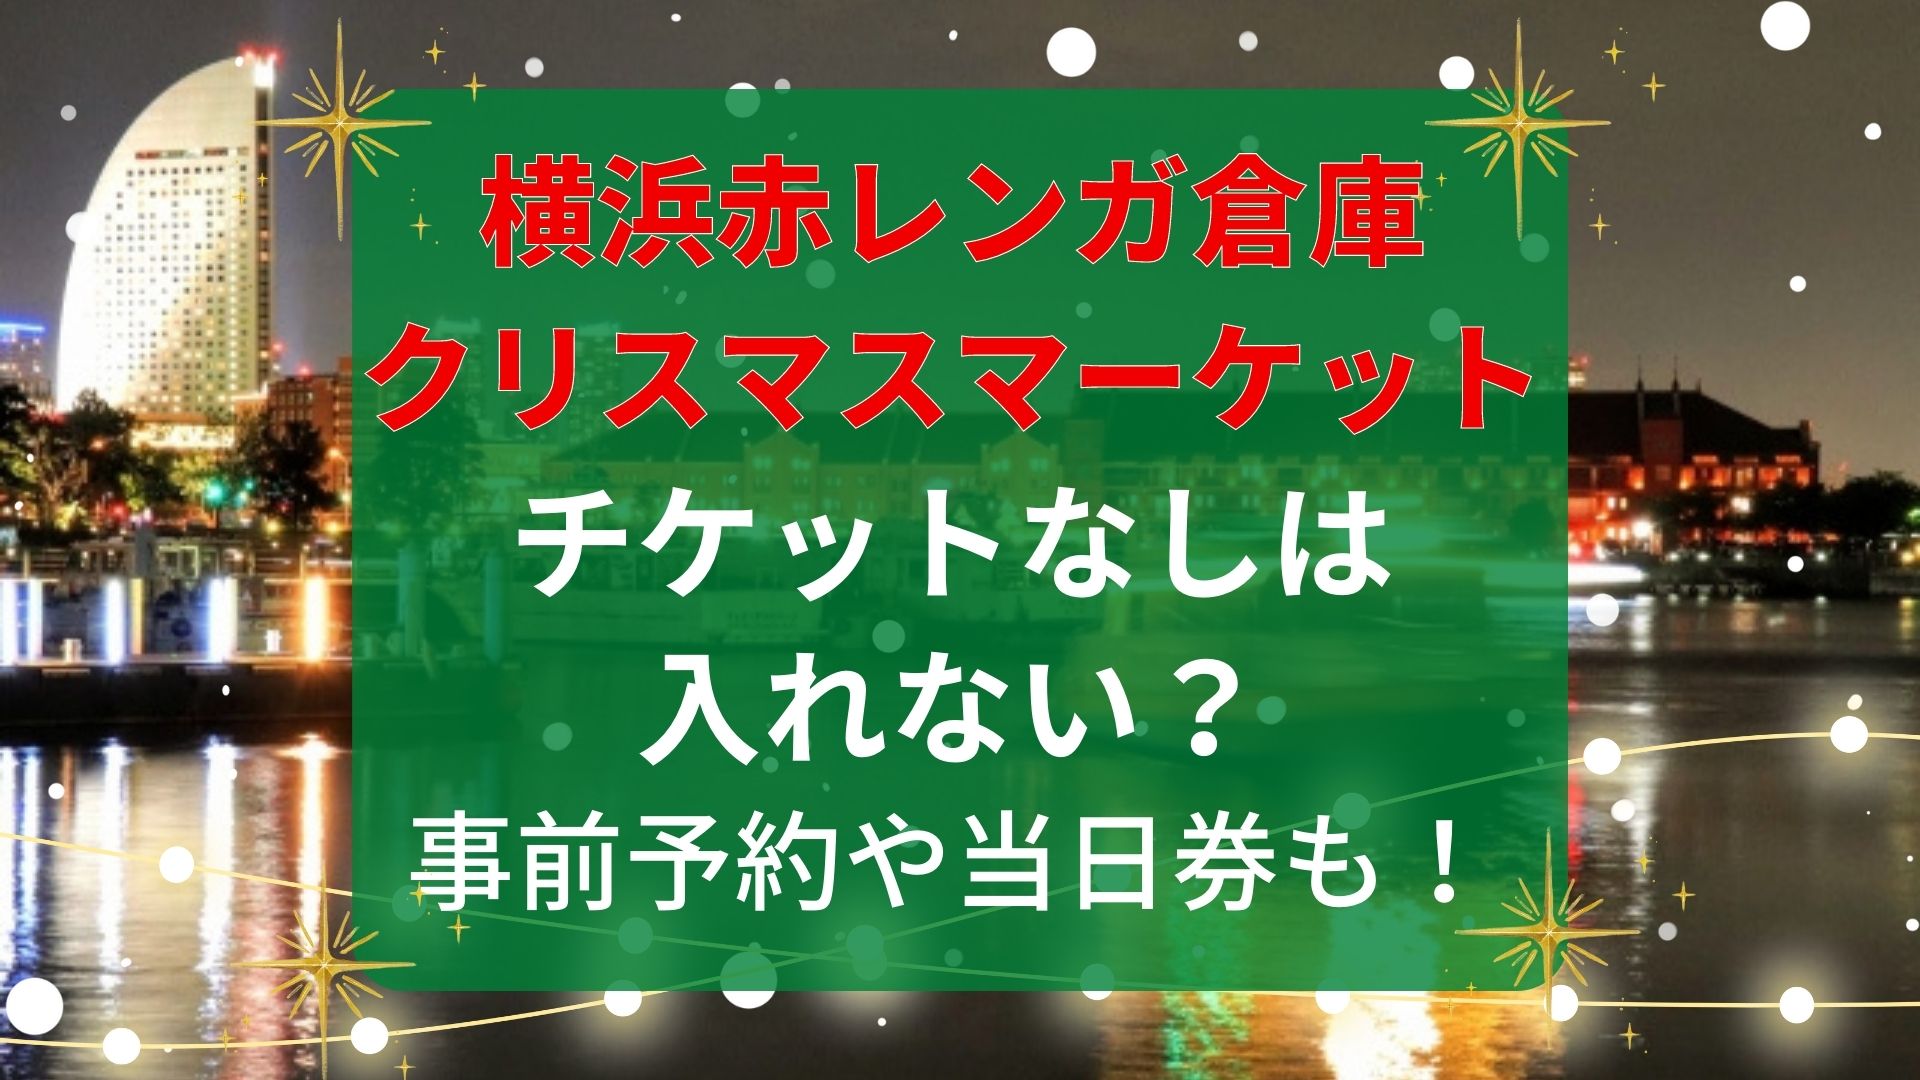 12月24日(土) 】 クリスマスマーケット 横浜赤レンガ倉庫チケット2枚